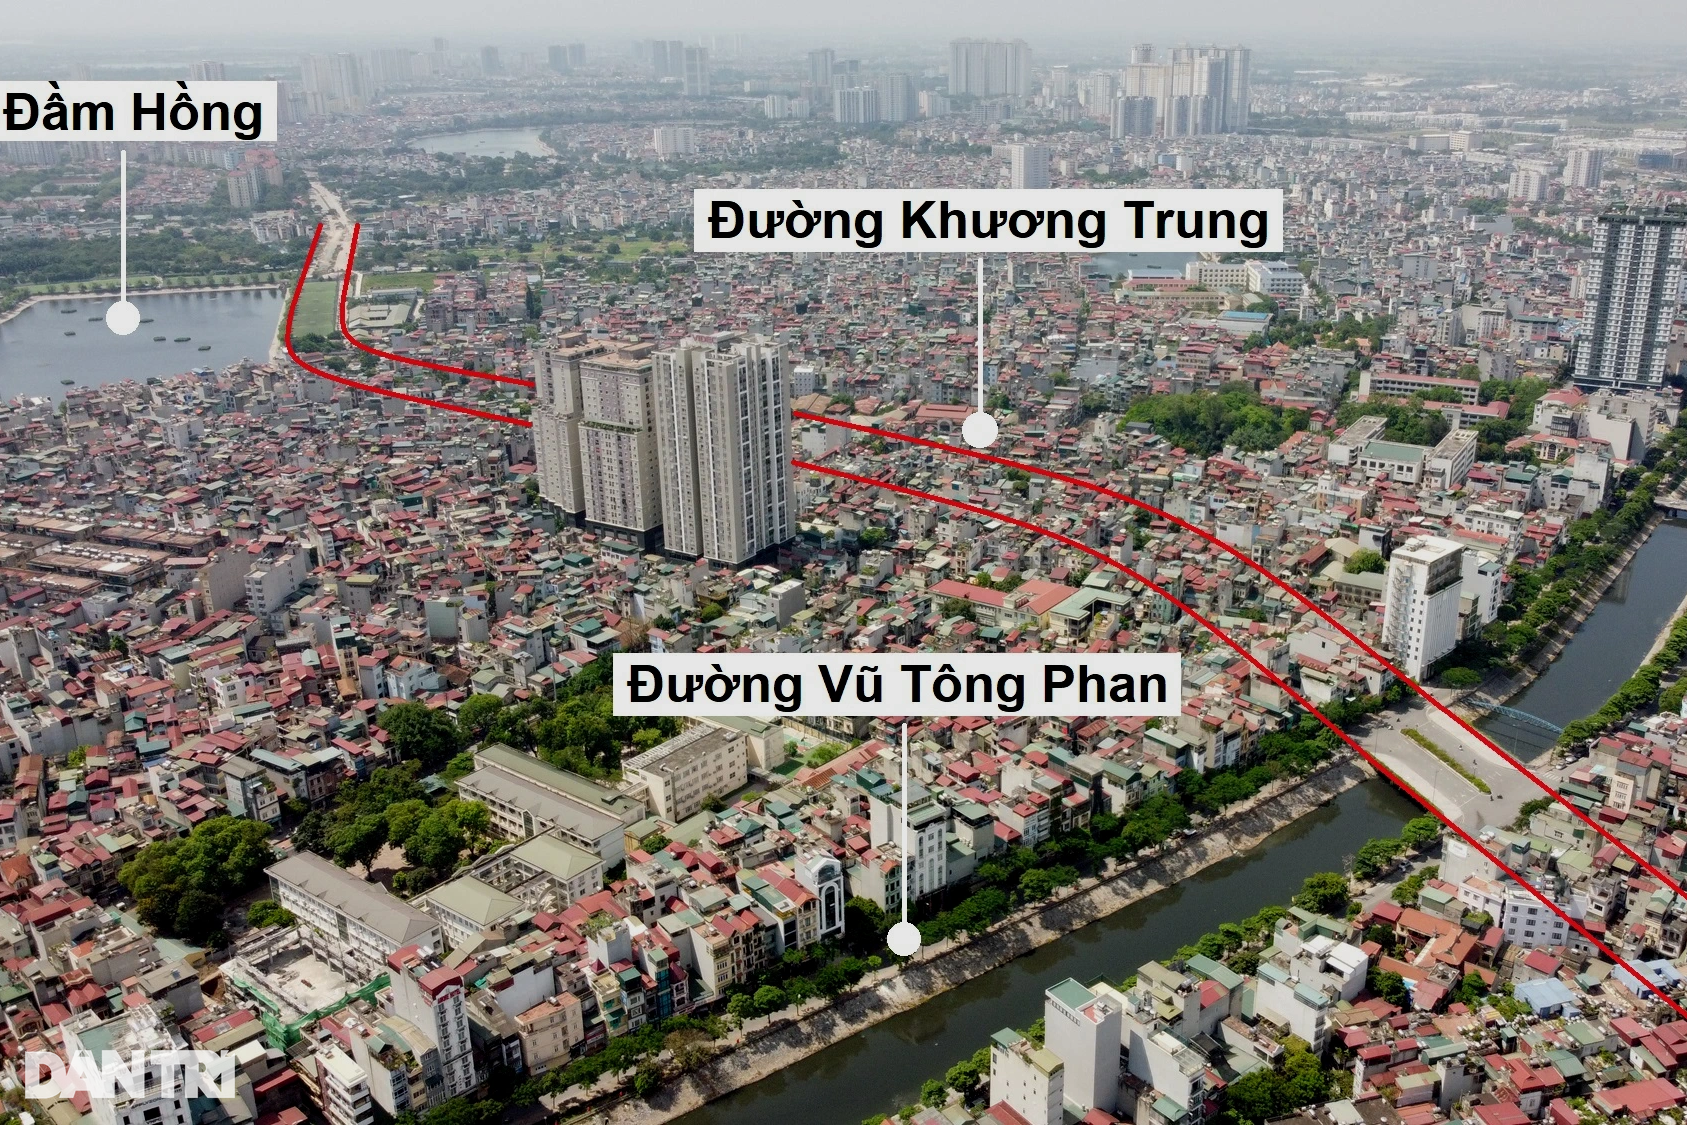 Toàn cảnh đường vành đai 2,5 đi qua nhiều khu đô thị ở Hà Nội - 13